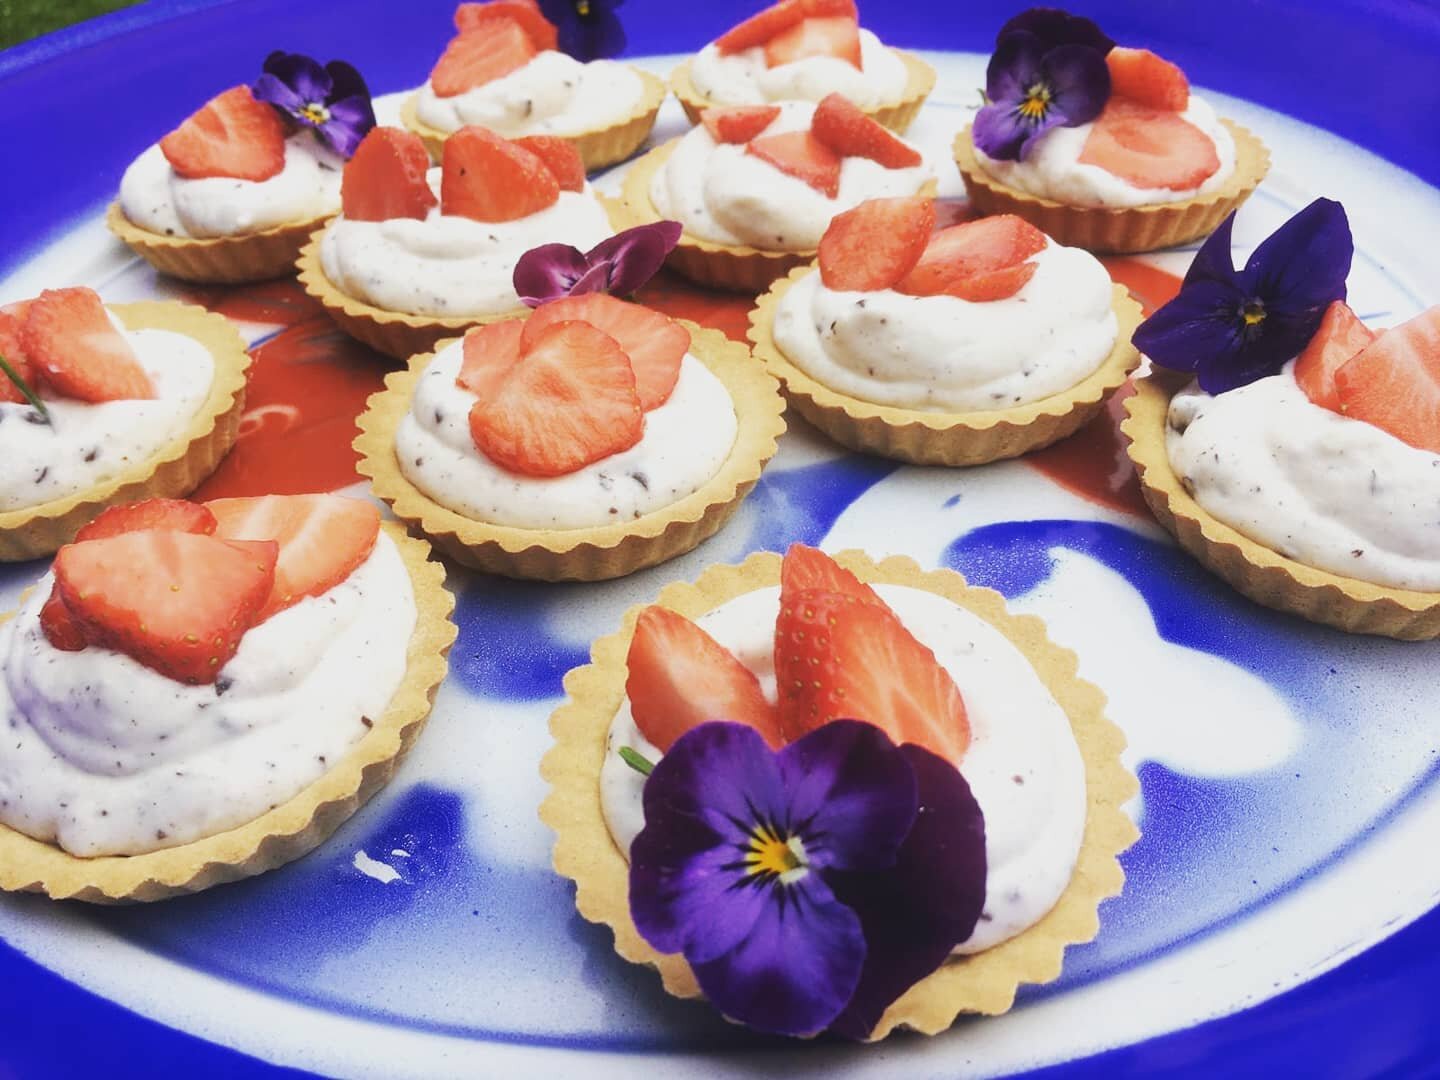 Ricotta-straciatella tartelettes met aardbeien 🍓🍓🍓
Wij verzinnen die lentezon er wel bij... #filmcatering #lente #aardbeien #keukendebuitendienst #naregen #komtzonneschijn #schijnt